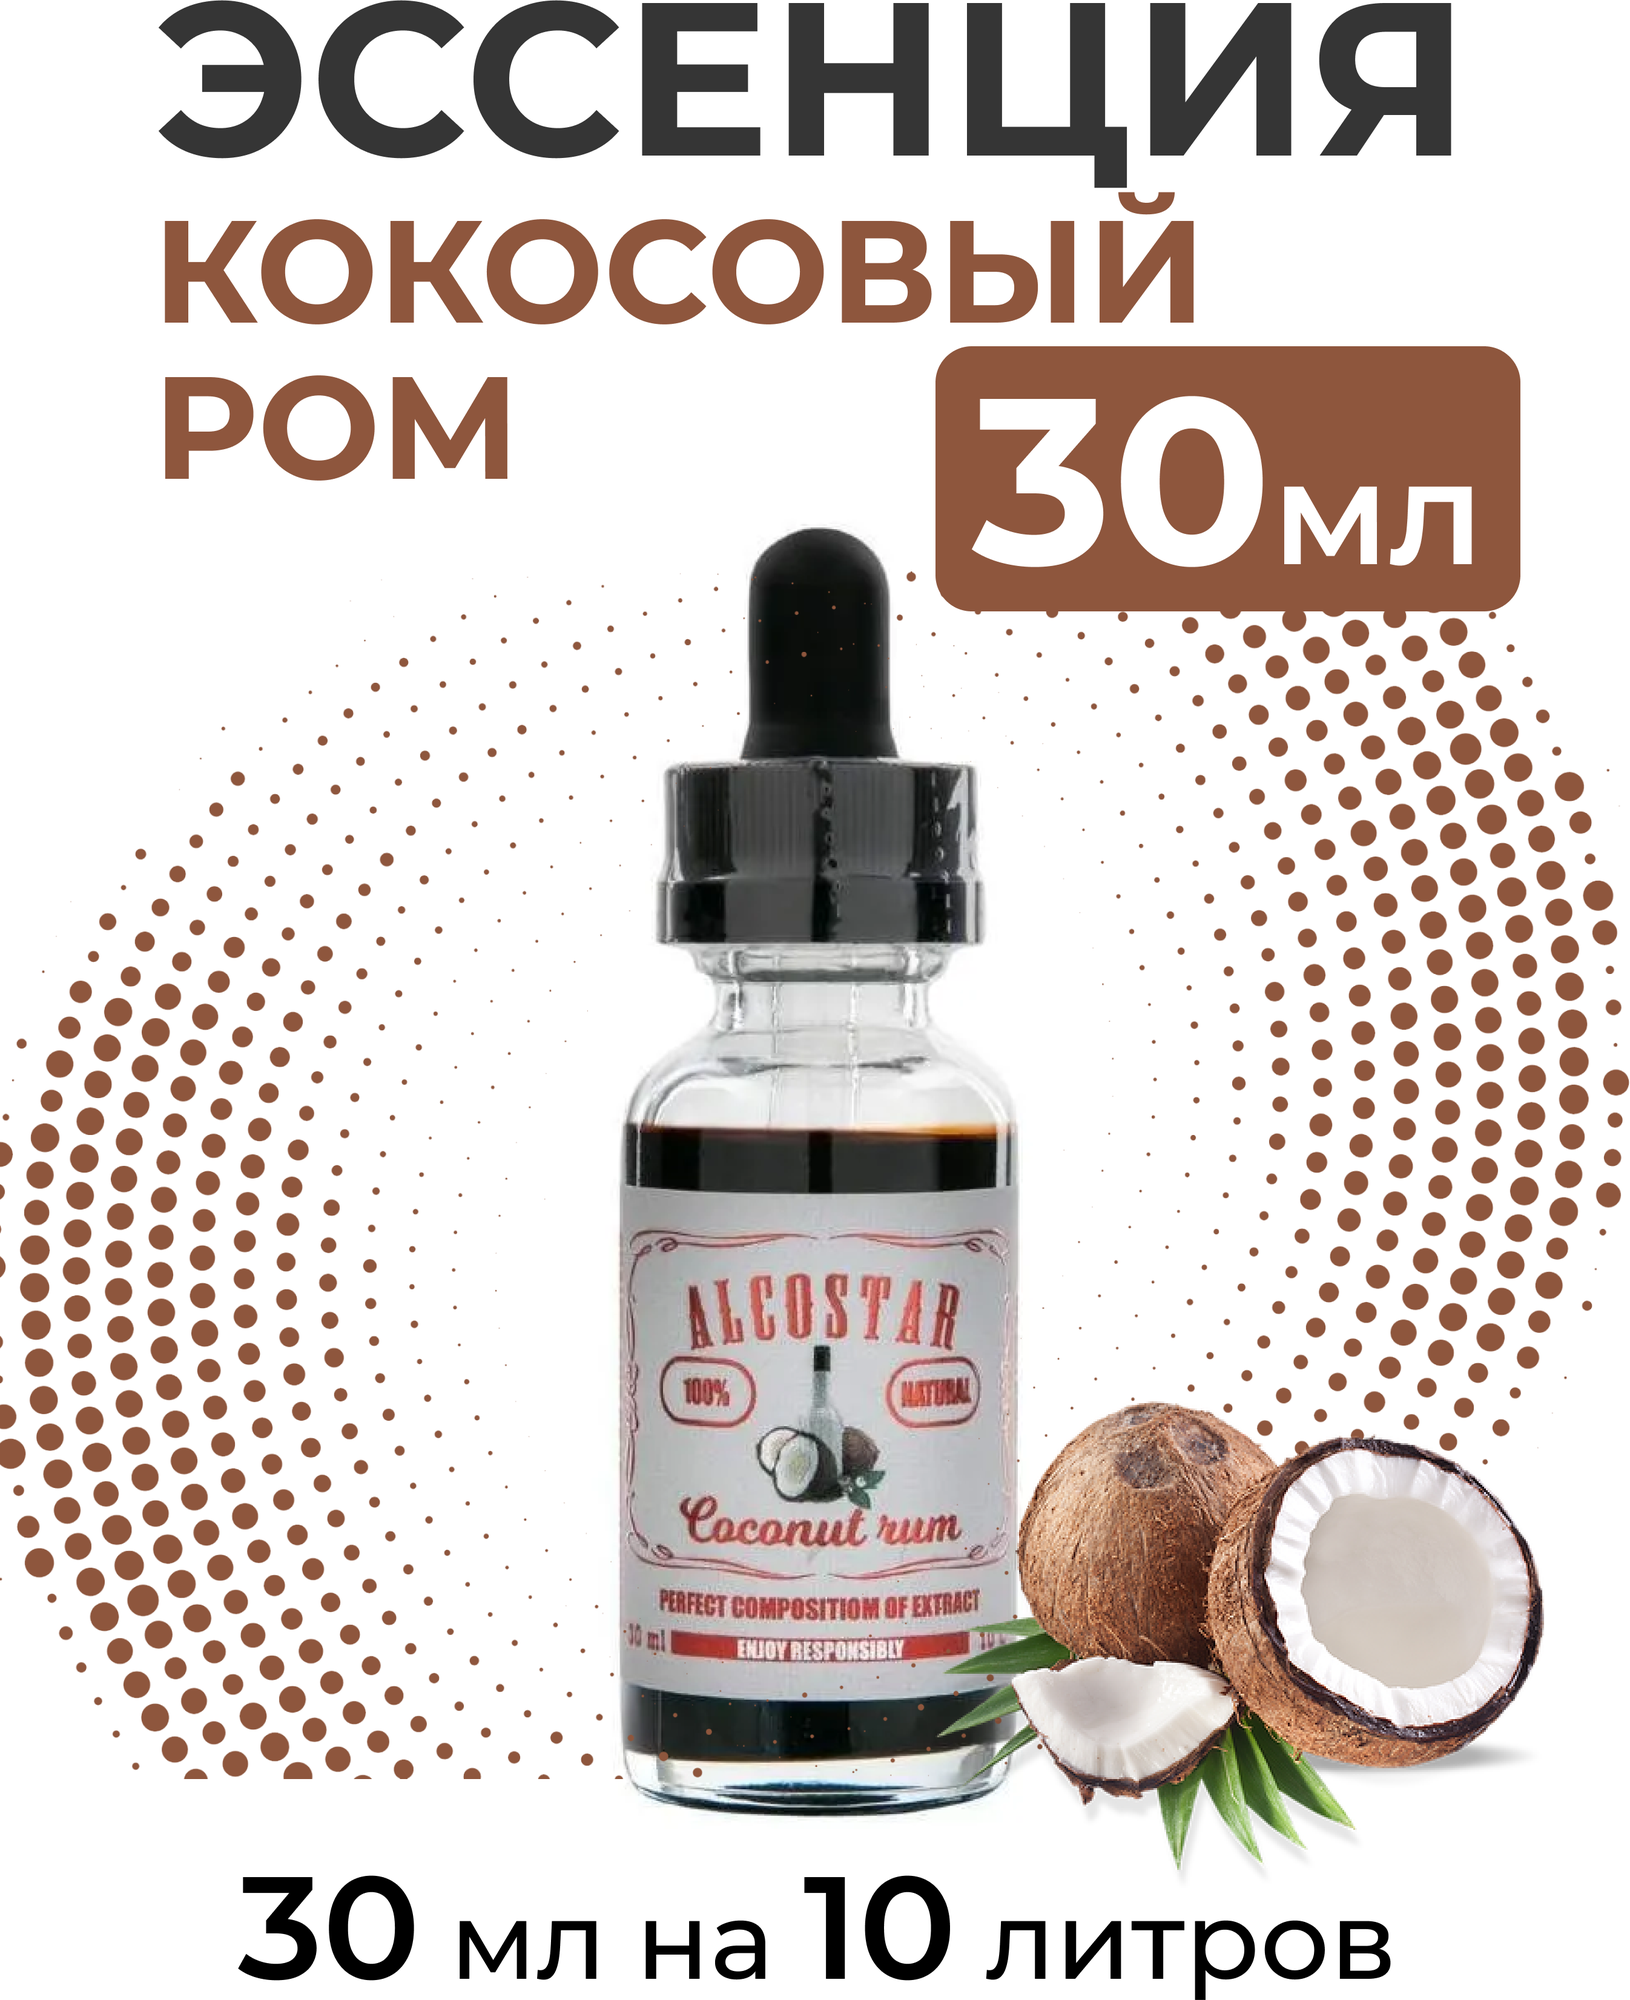 Эссенция Кокосовый ром, Coconut Rum Alcostar, вкусовой концентрат (ароматизатор пищевой) для самогона, 30 мл